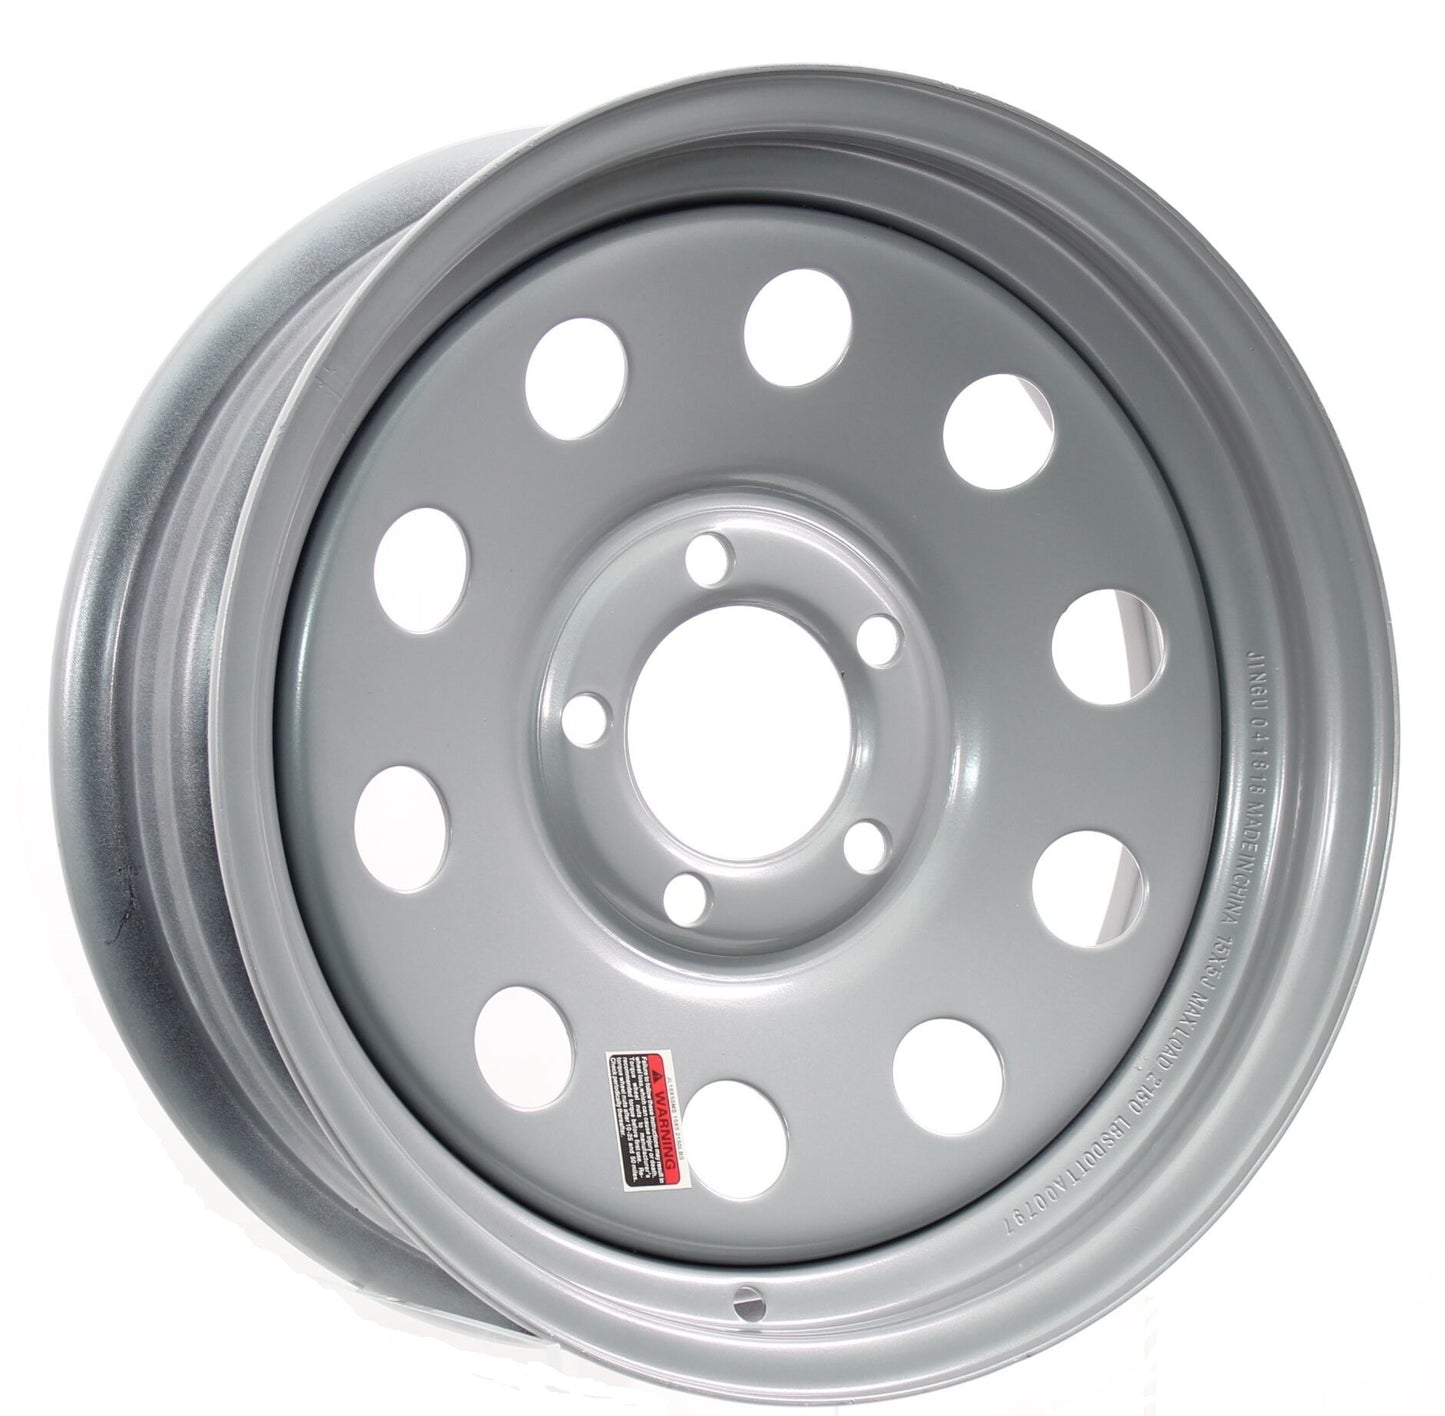 Trailer Rim Wheel 13 in. 13X4.5 5 Lug Hole Bolt Wheel Silver Modular Design